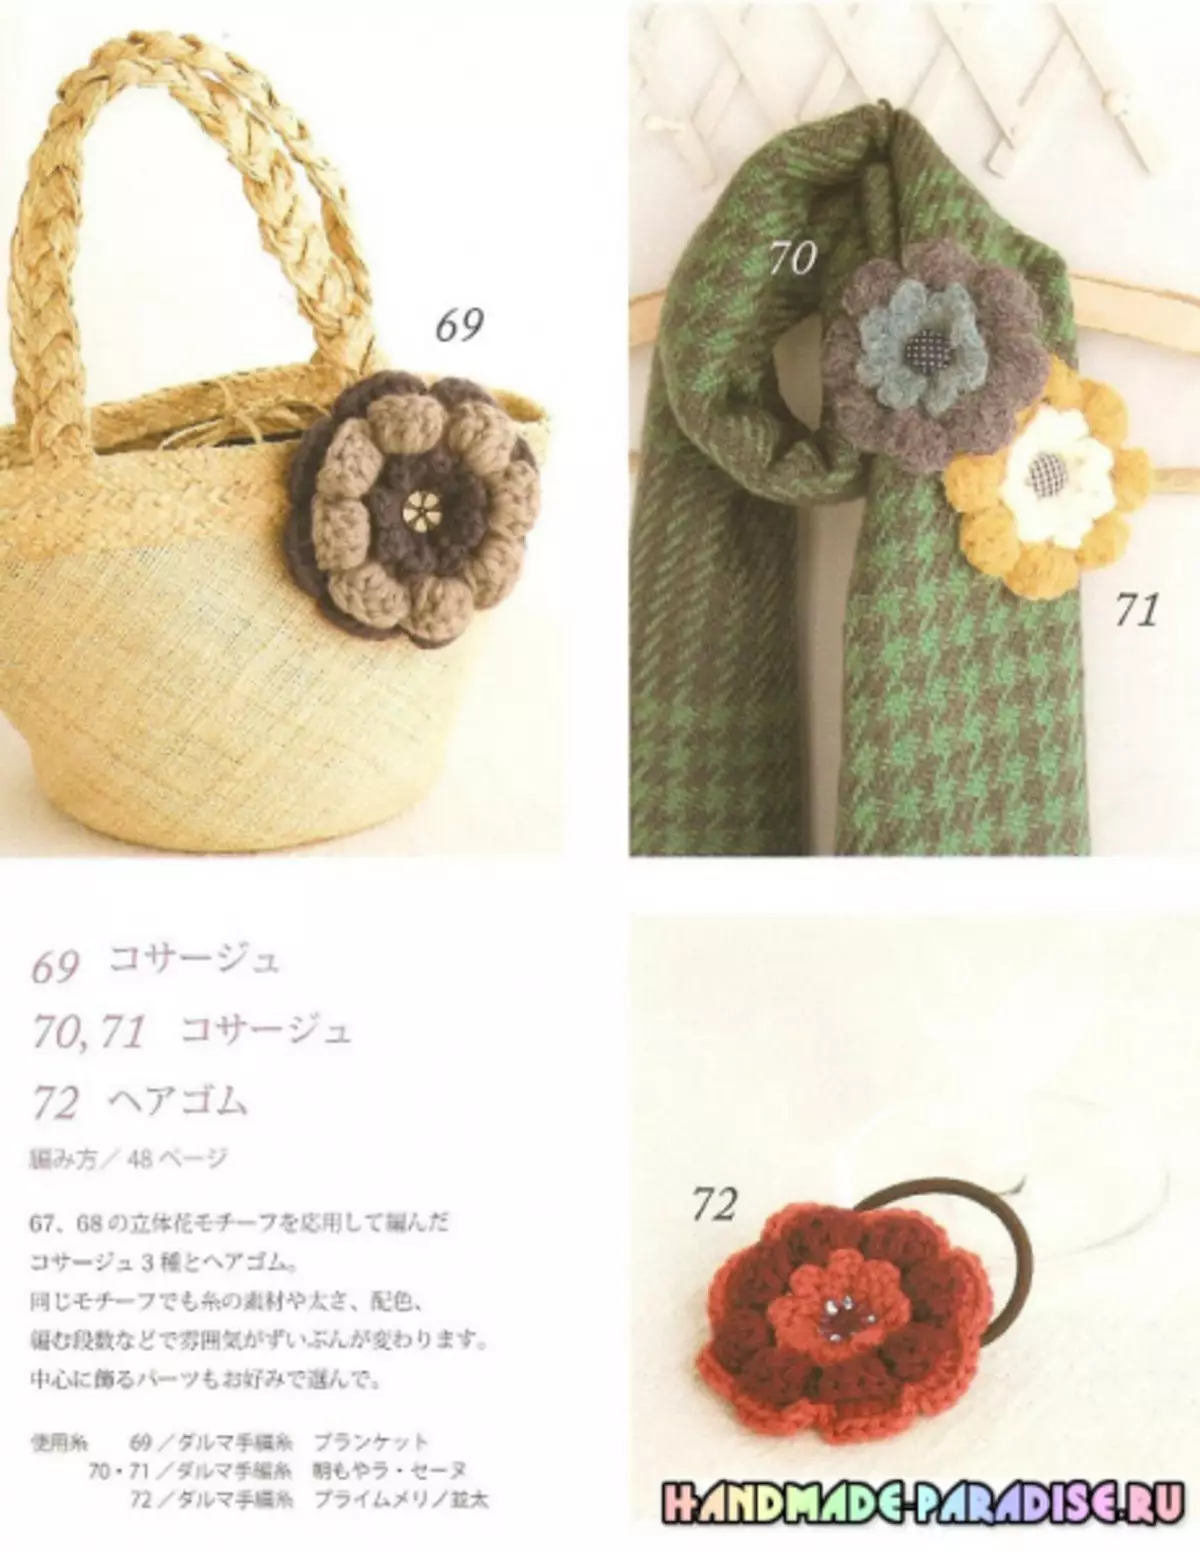 Japonský časopis s háčkovacími schémami